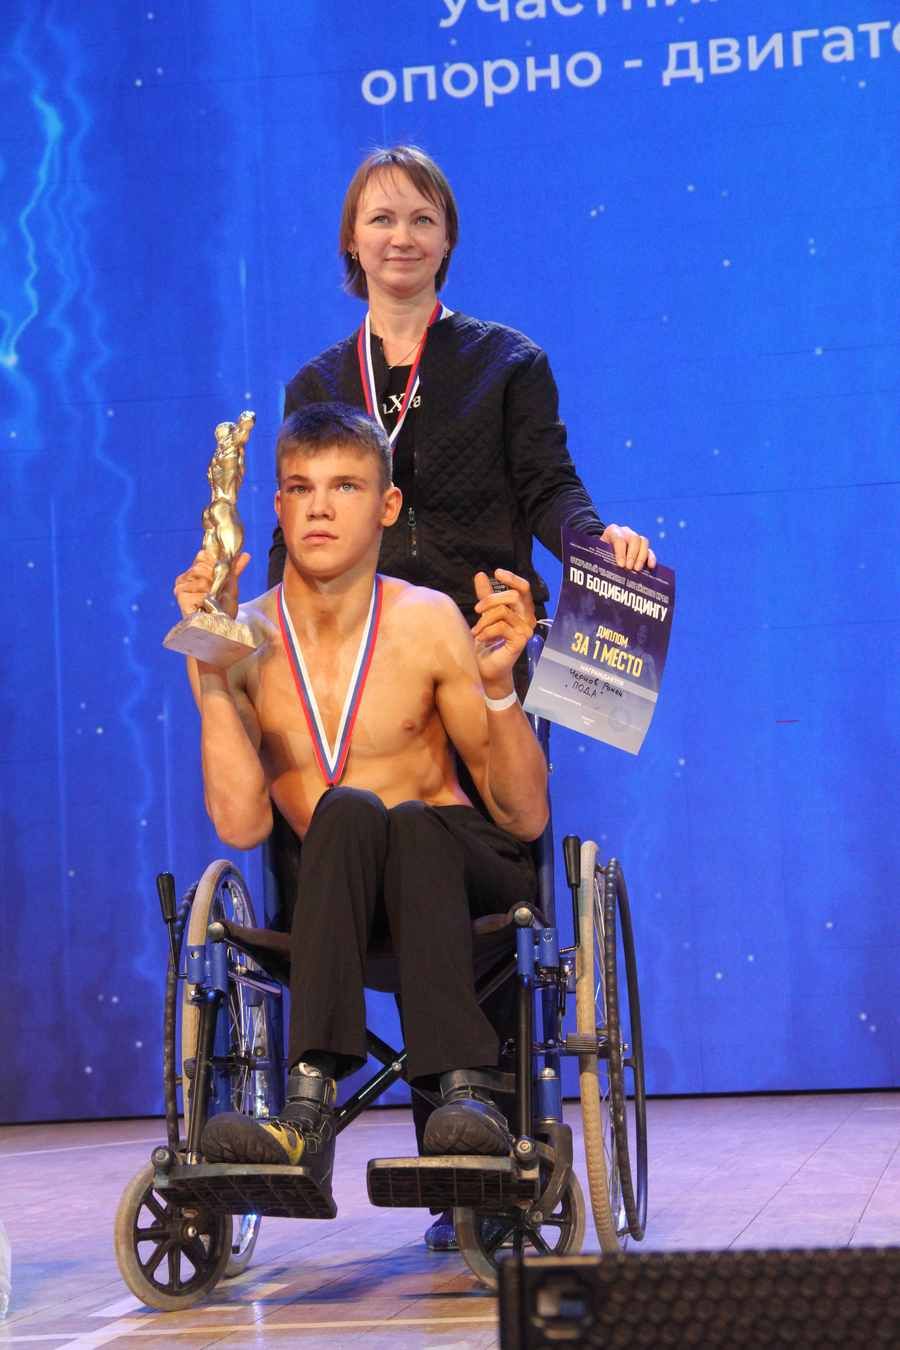 Роман Чернов – победитель чемпионата края по бодибилдингу, его мама получила приз как тренер чемпиона. Фото Ярослава Махначева